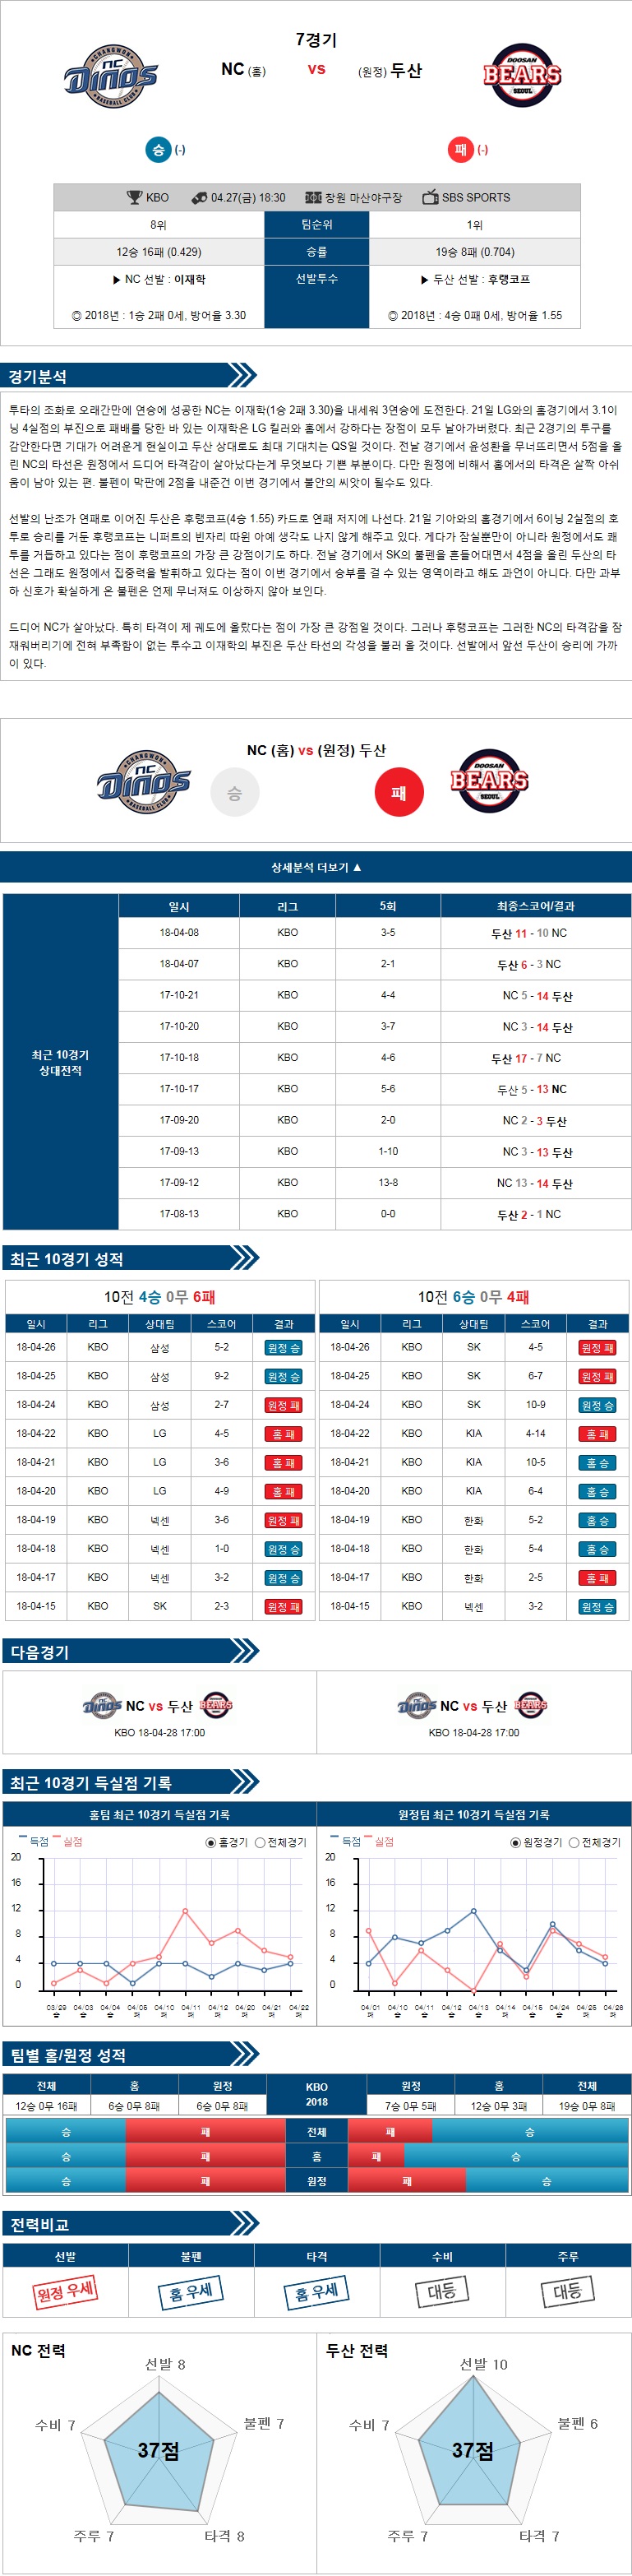 4-27 [KBO] 18:30 야구분석 NC vs 두산